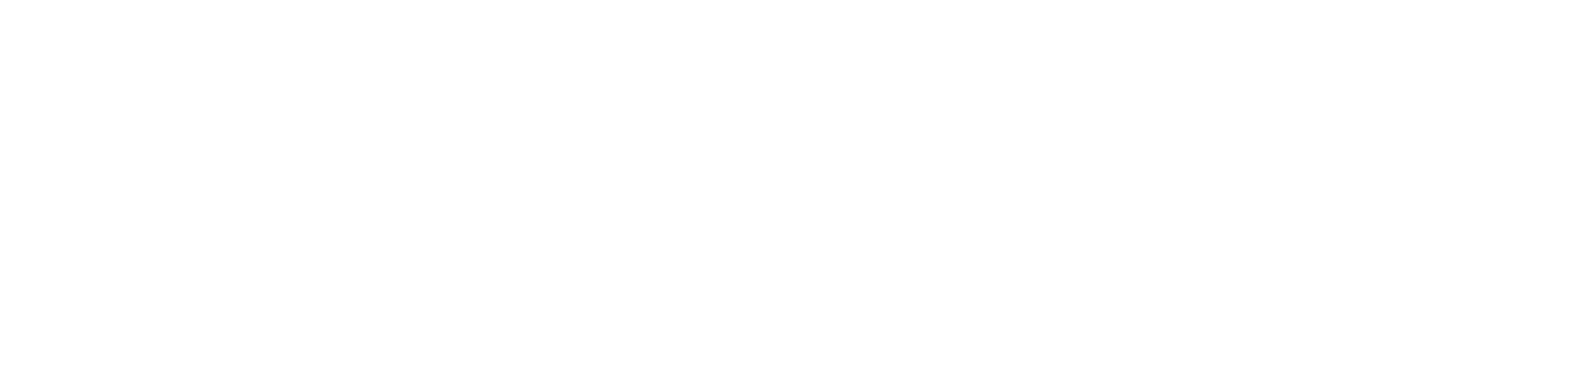 Fomento Económico Mexicano logo pour fonds sombres (PNG transparent)